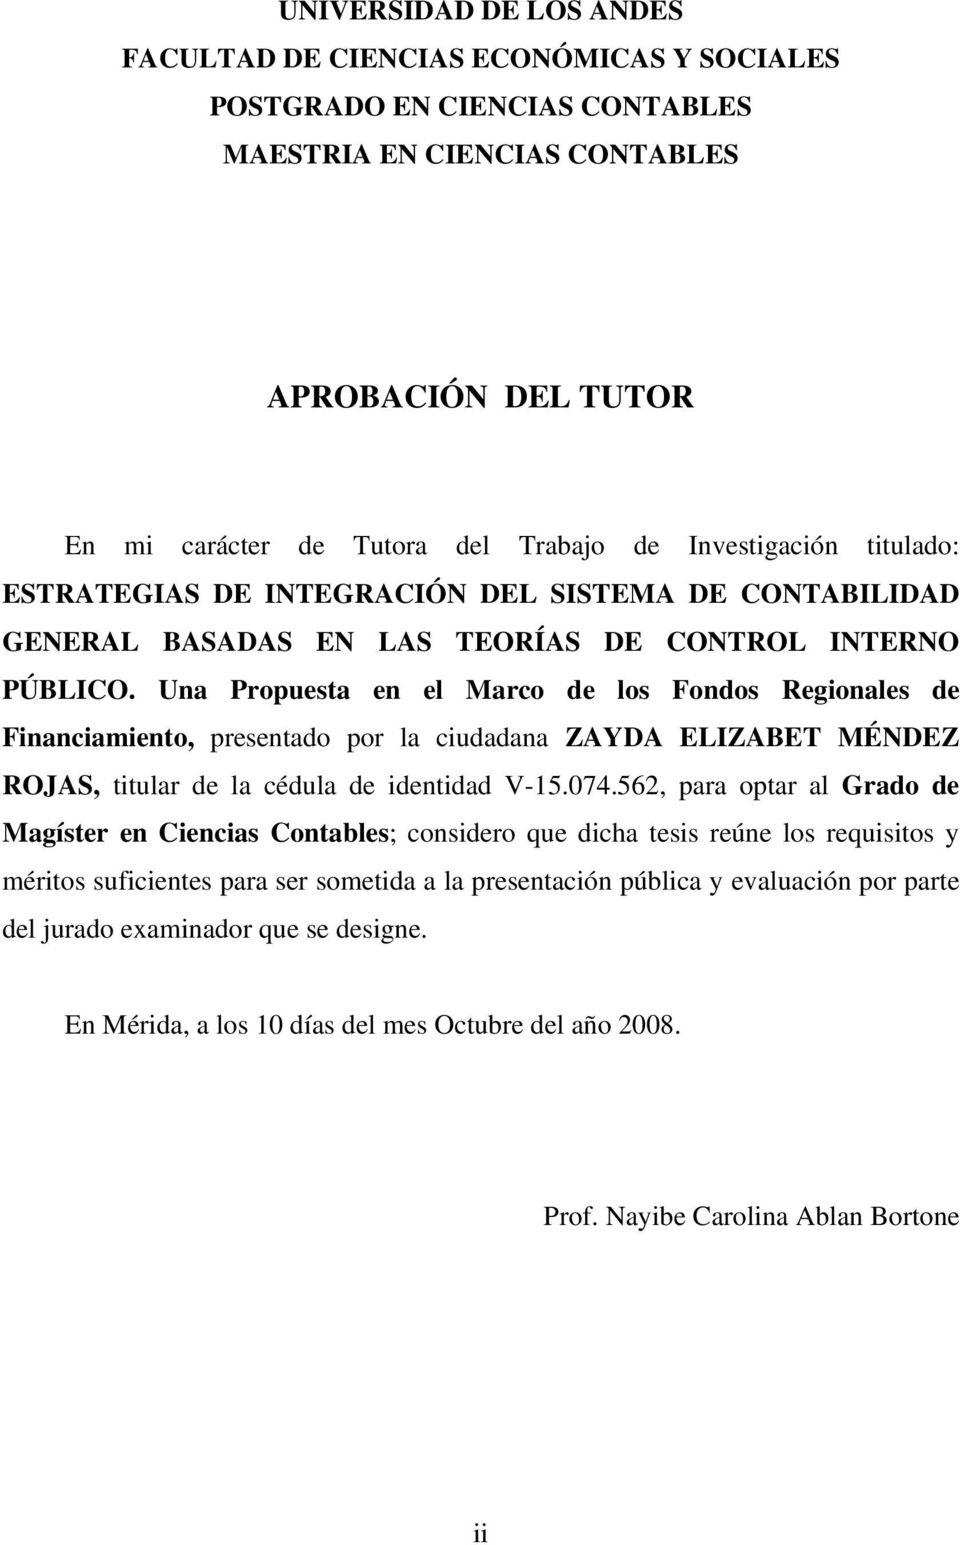 Una Propuesta en el Marco de los Fondos Regionales de Financiamiento, presentado por la ciudadana ZAYDA ELIZABET MÉNDEZ ROJAS, titular de la cédula de identidad V-15.074.